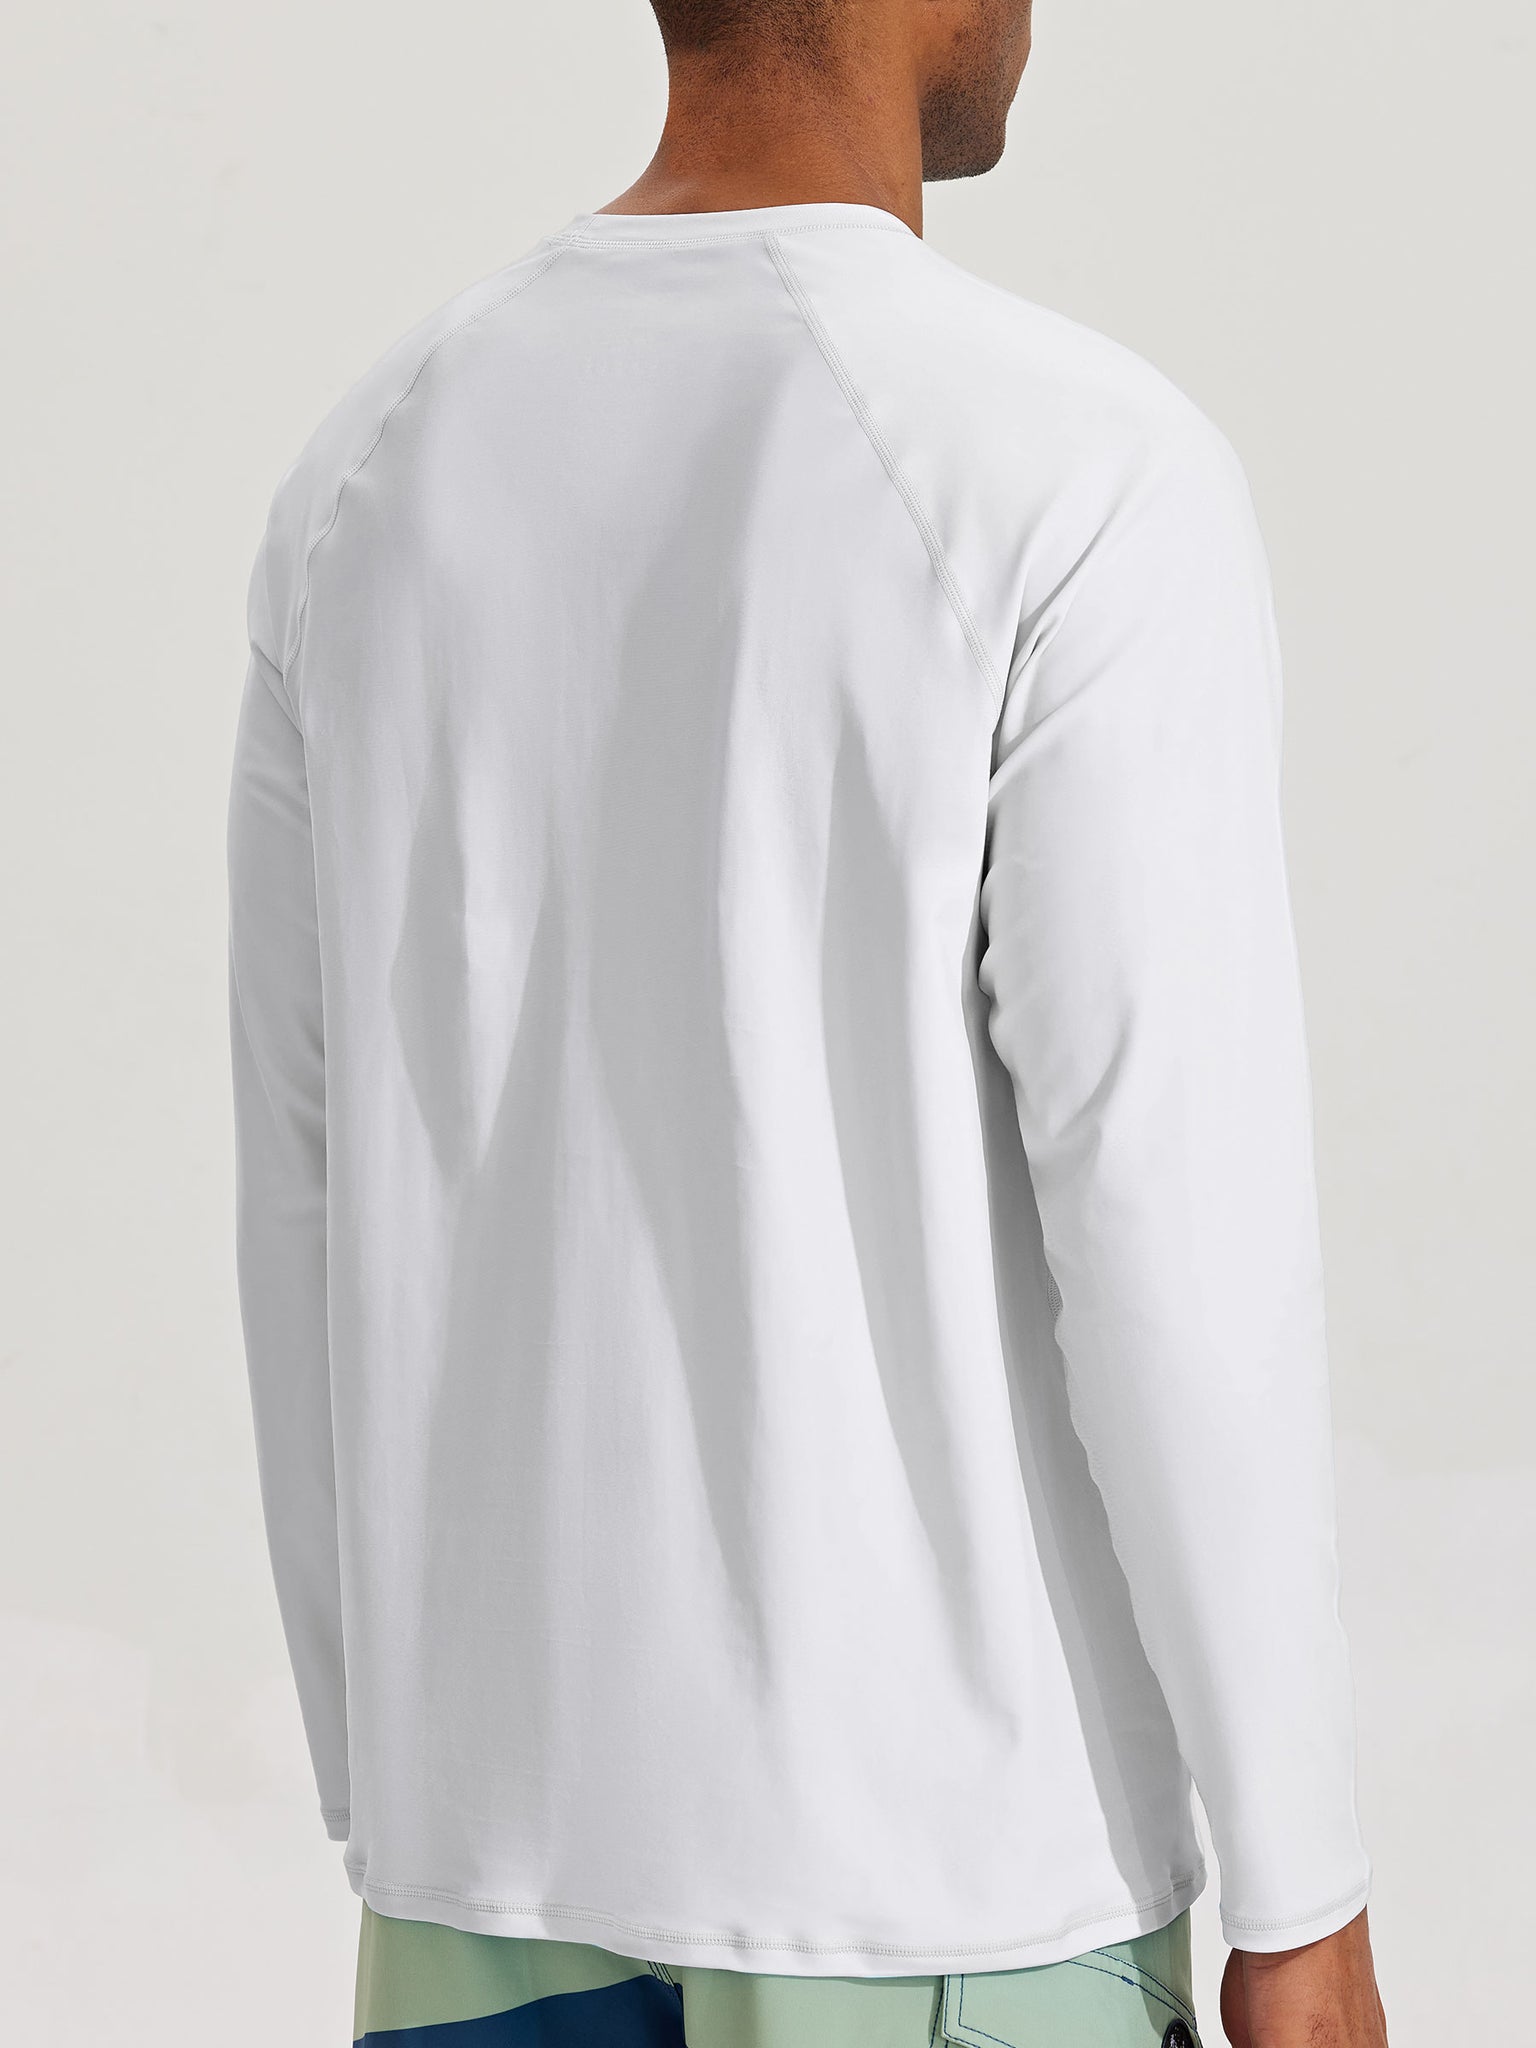 Men's Sun Protection Long Sleeve Shirt_White_model3